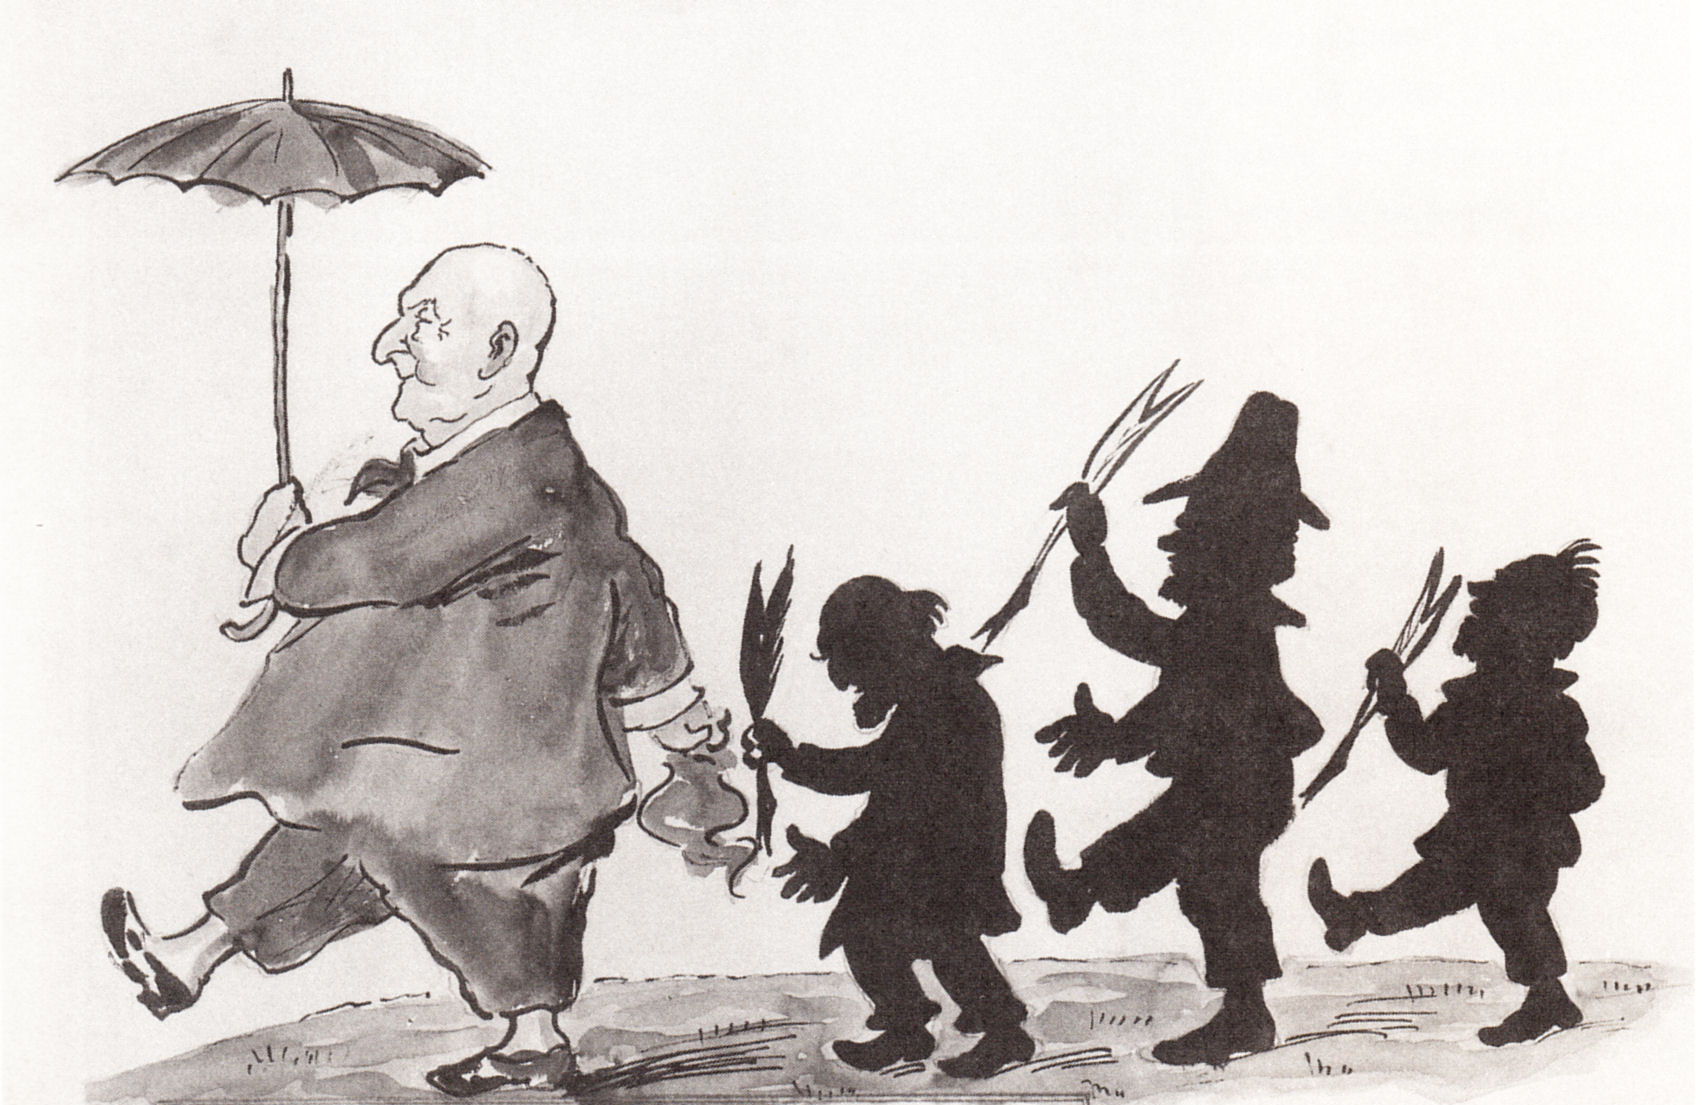 Cartoon of critics following Anton Bruckner in a march, with silhouettes of critics following him